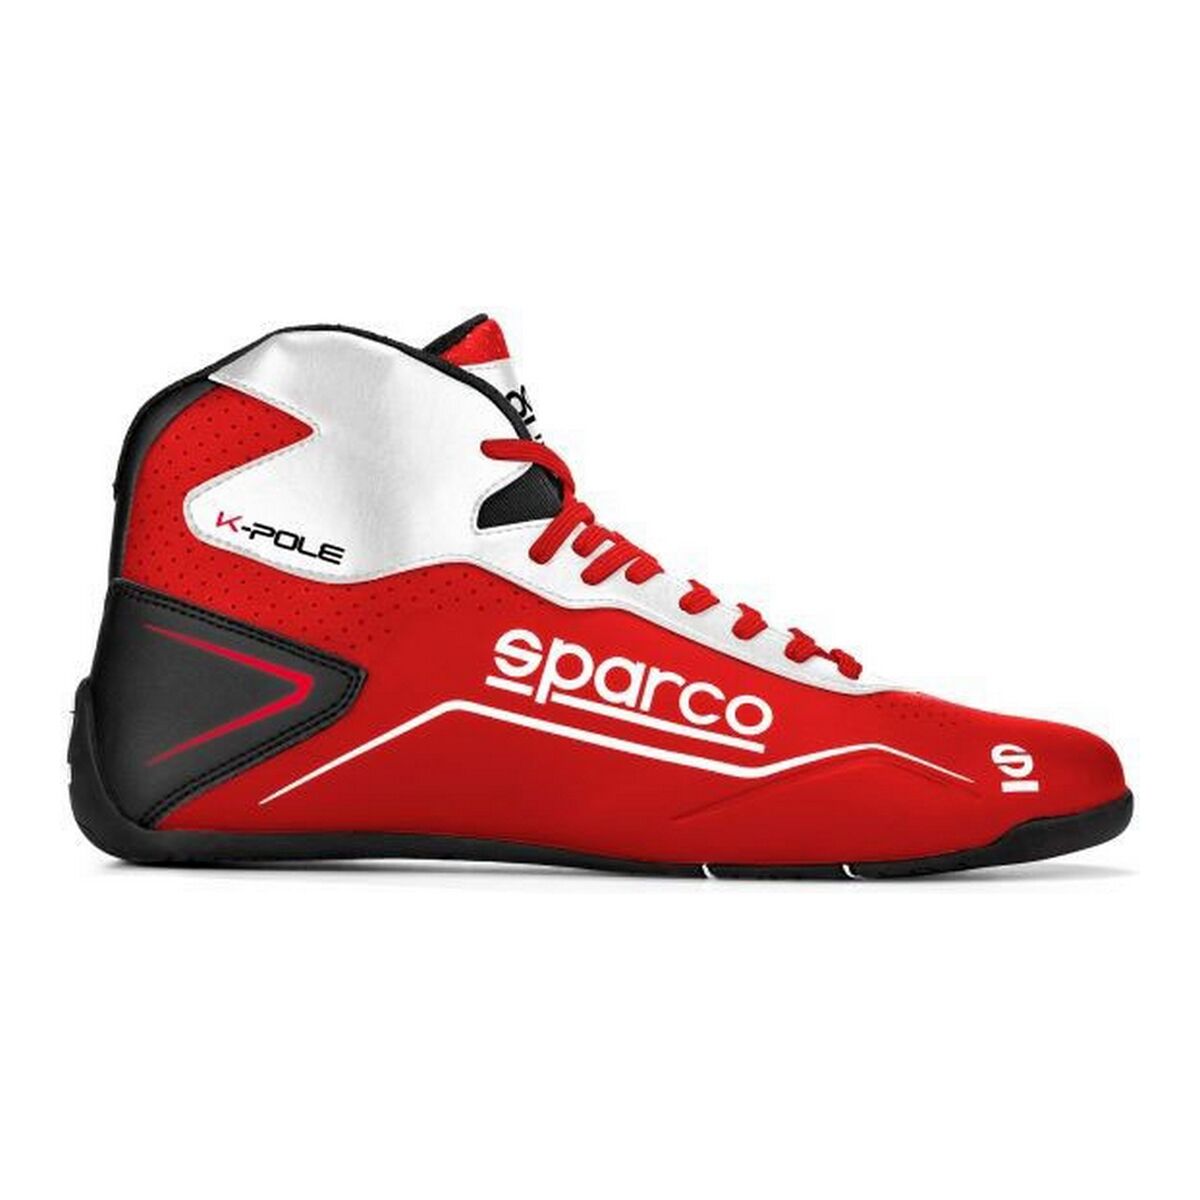 Chaussures de course Sparco K-POLE 2020